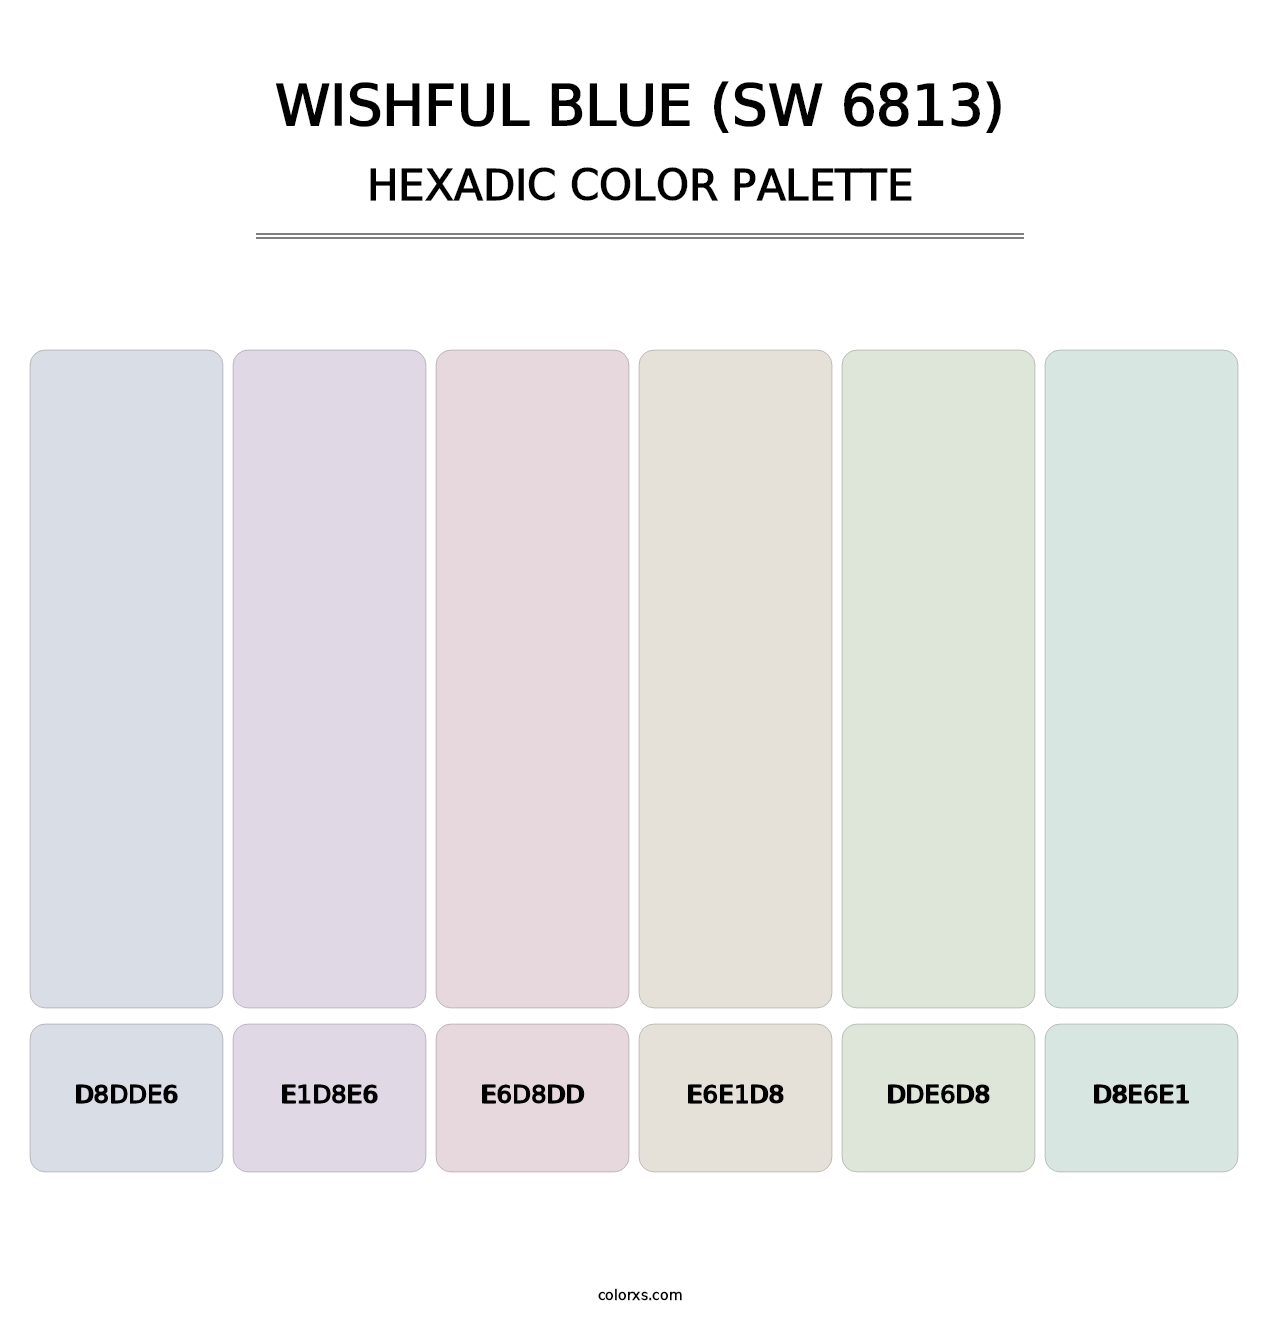 Wishful Blue (SW 6813) - Hexadic Color Palette